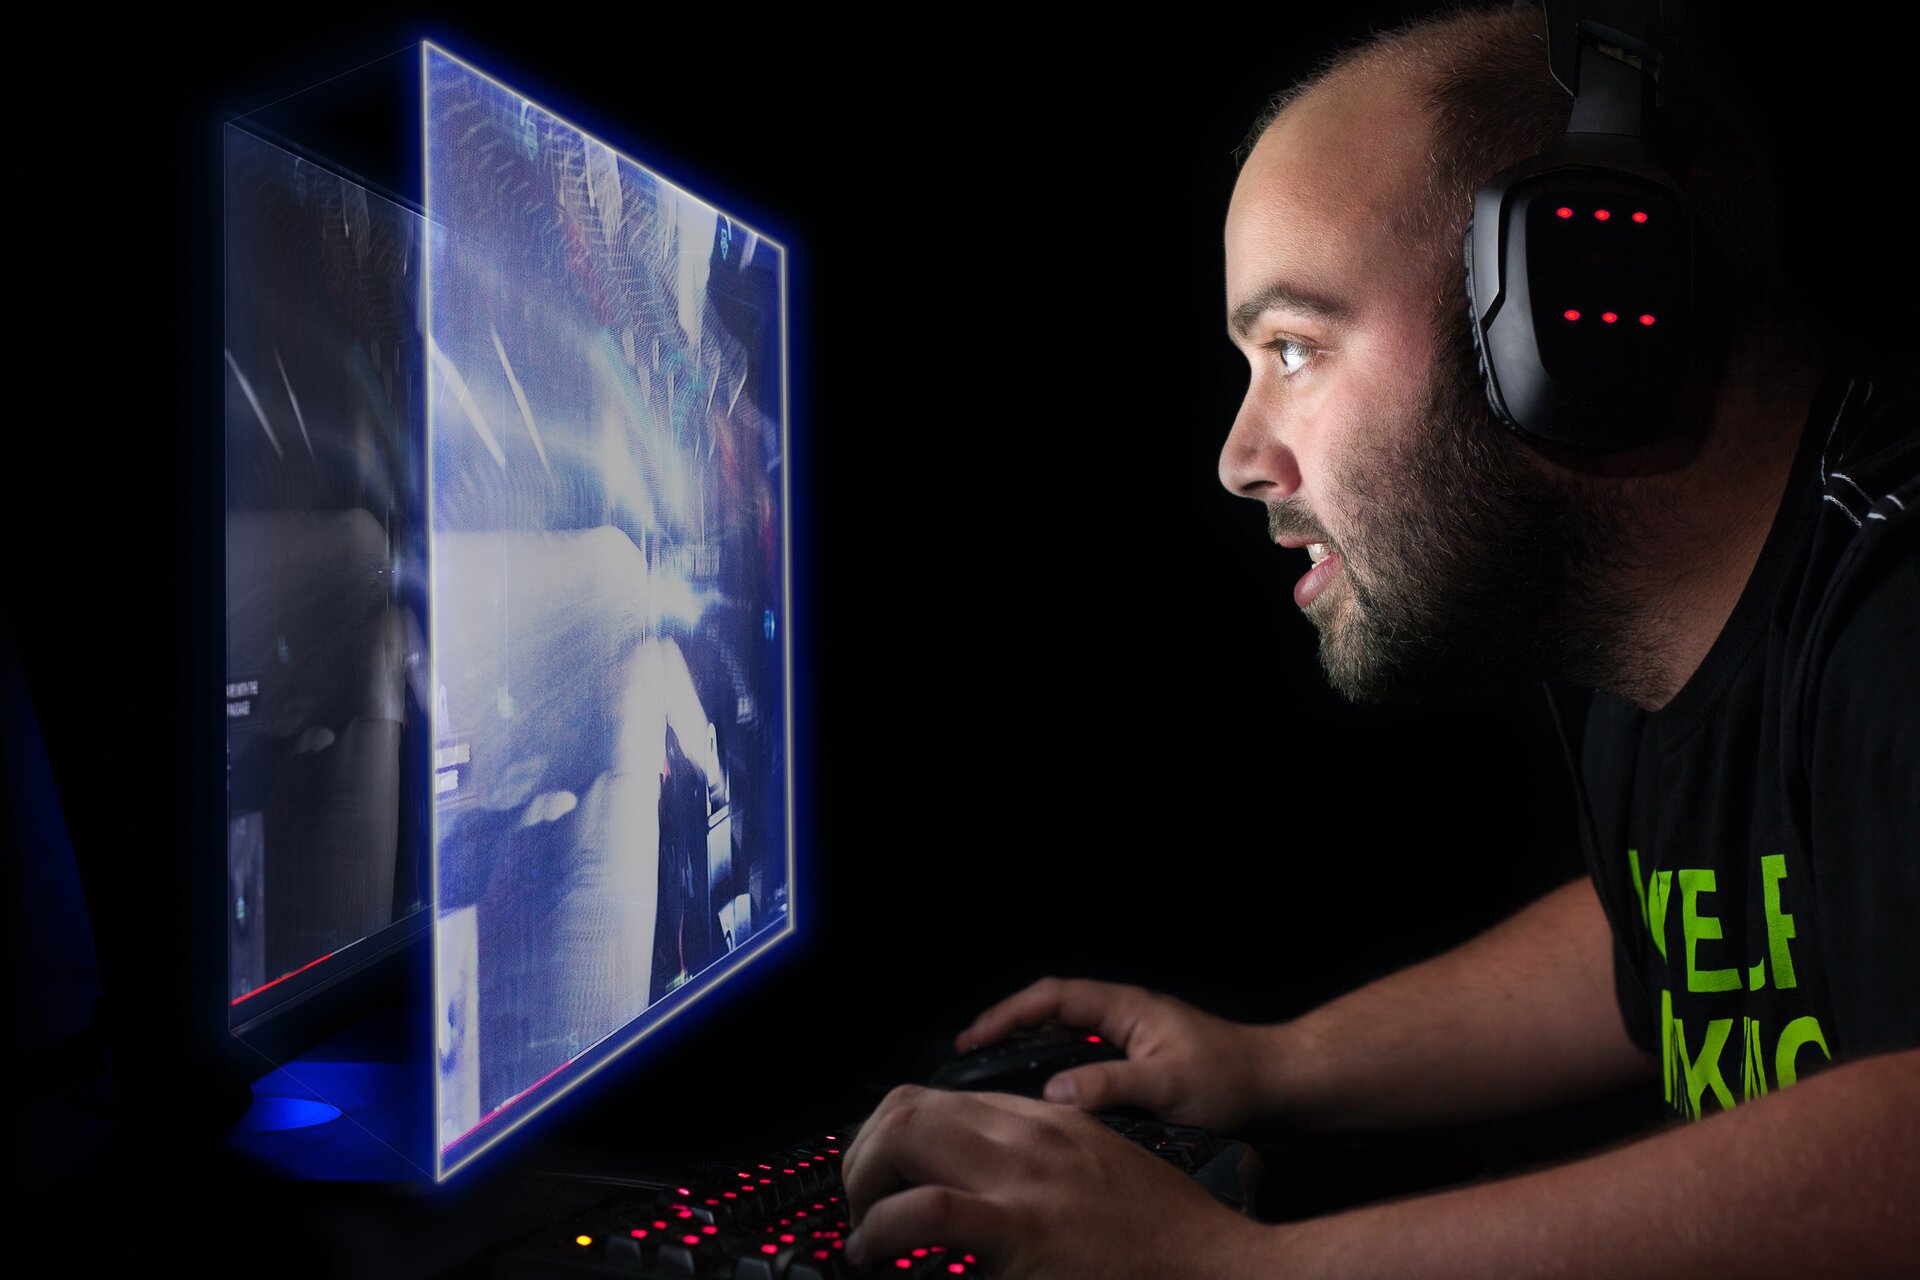 Ilustracja przedstawia wirtualną rzeczywistość. Zdjęcie ukazuje mężczyznę w wieku ok 35 lat, który siedzi ze słuchawkami na uszach i gra w grę komputerową. Mężczyzna korzysta z ekranu wyświetlającego obraz trójwymiarowy.